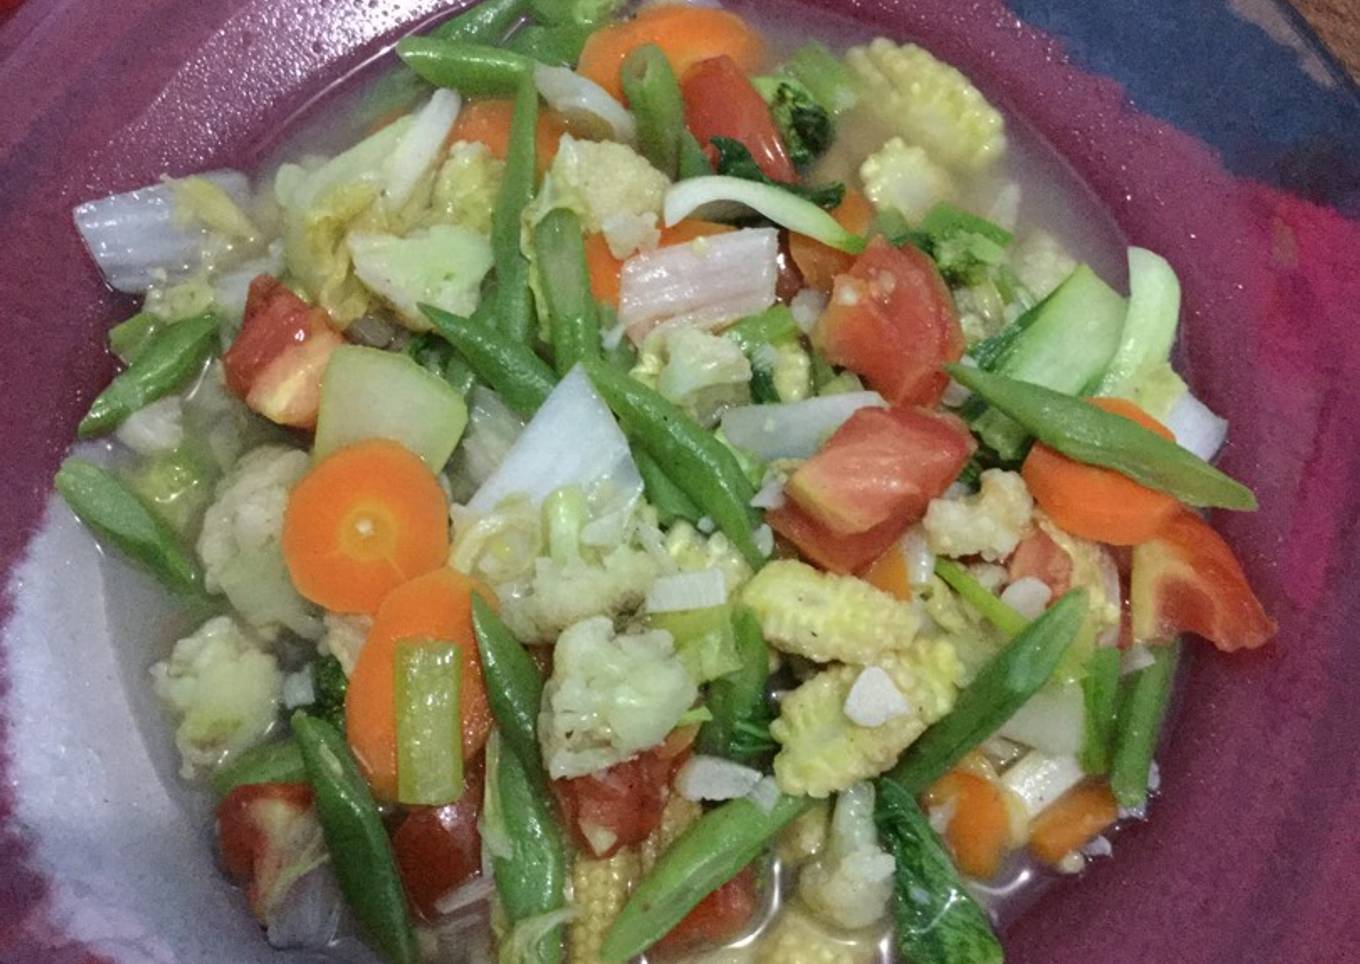 Capcay simple cuma sayuran for lunch (diet GM day 2) - resep kuliner nusantara